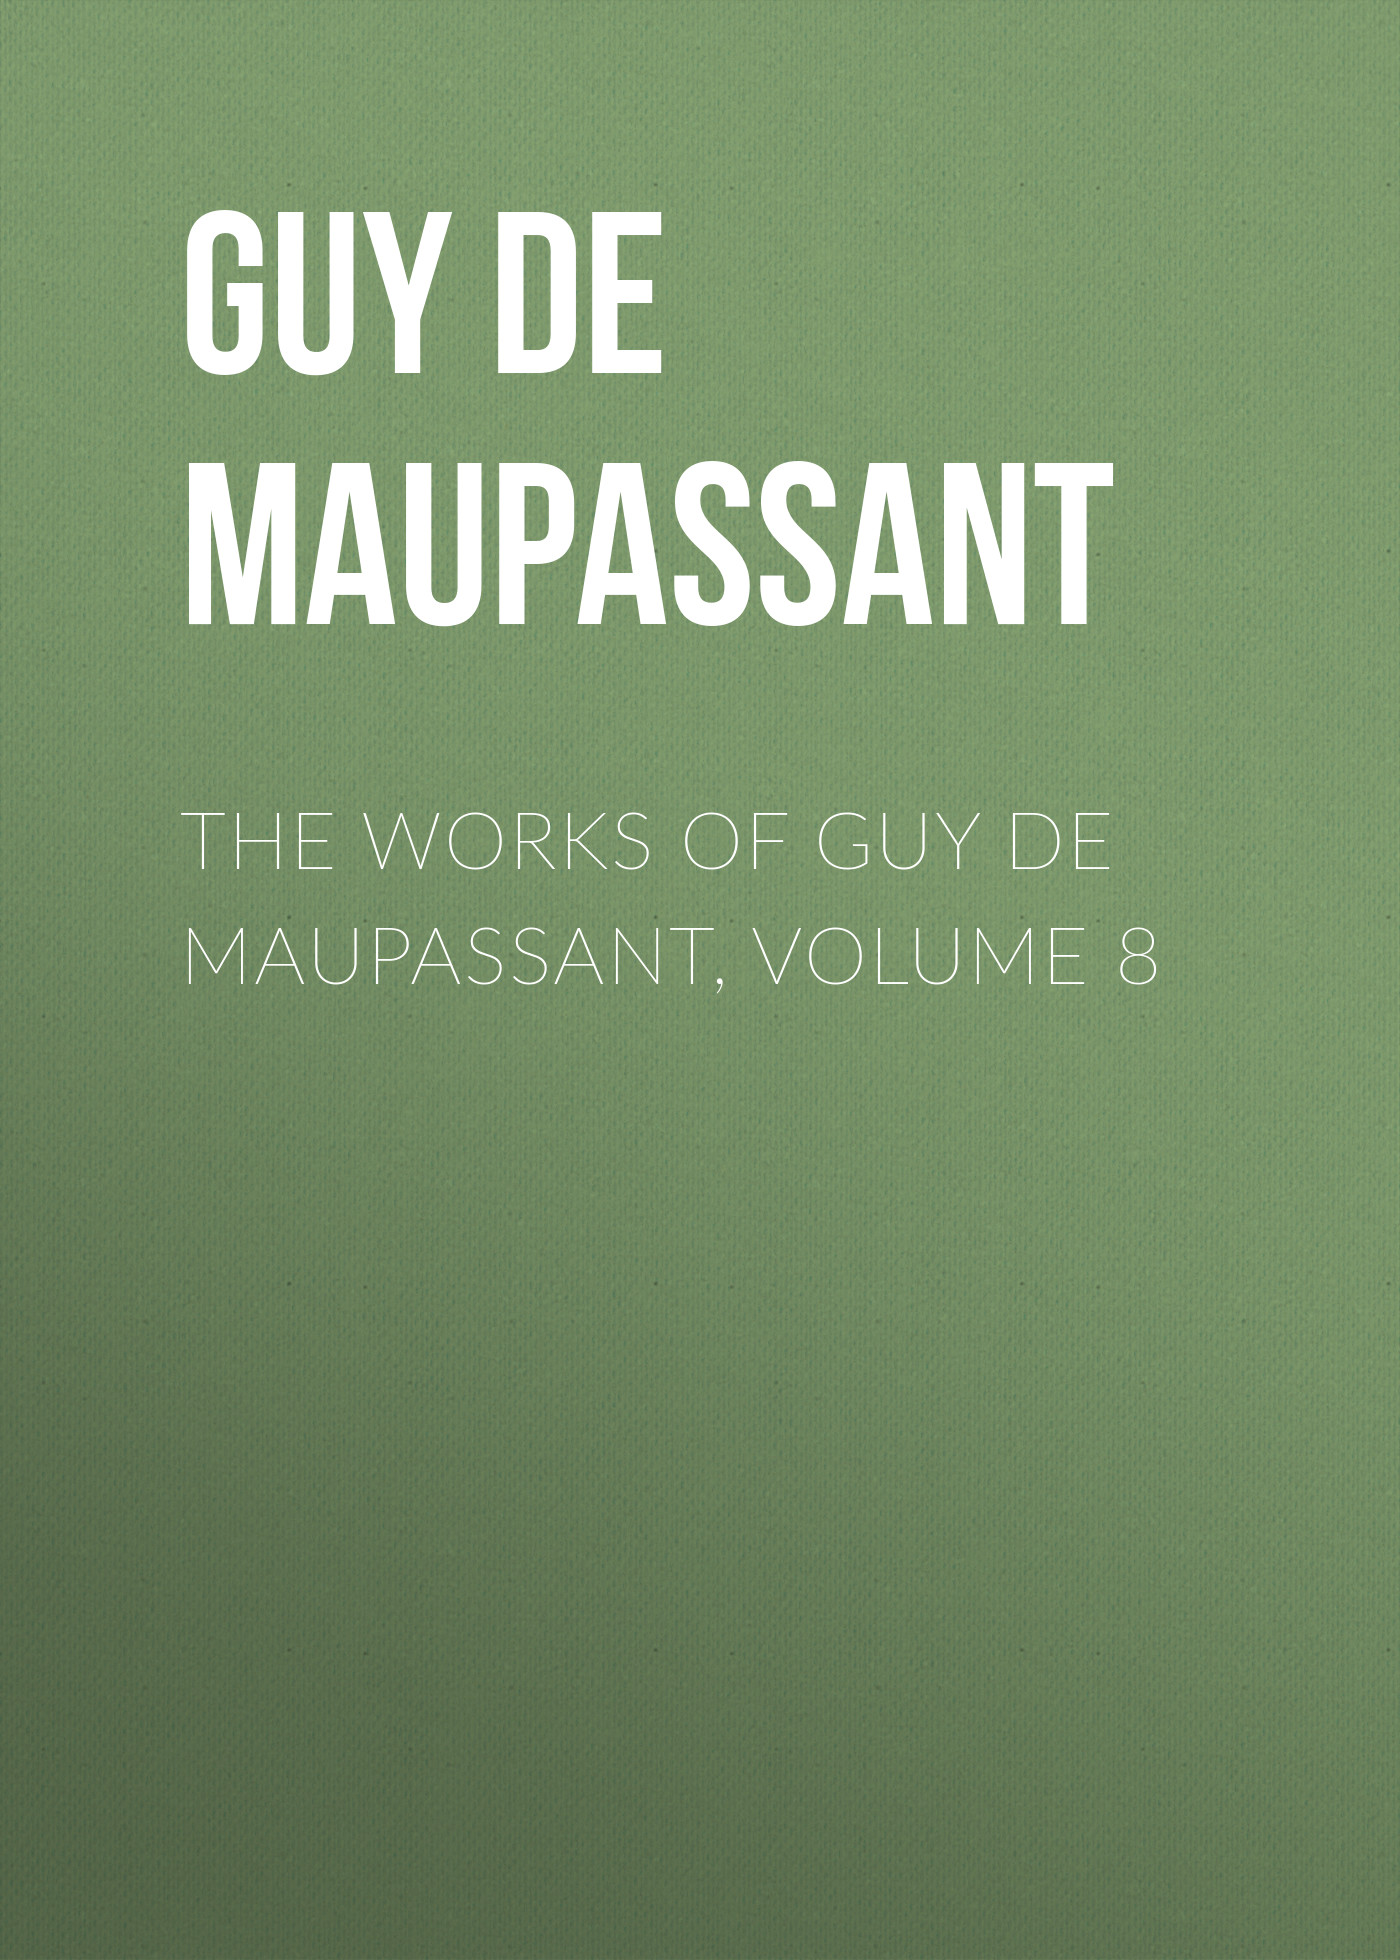 Книга The Works of Guy de Maupassant, Volume 8 из серии , созданная Guy Maupassant, может относится к жанру Литература 19 века, Зарубежная старинная литература, Зарубежная классика. Стоимость электронной книги The Works of Guy de Maupassant, Volume 8 с идентификатором 25292275 составляет 0 руб.